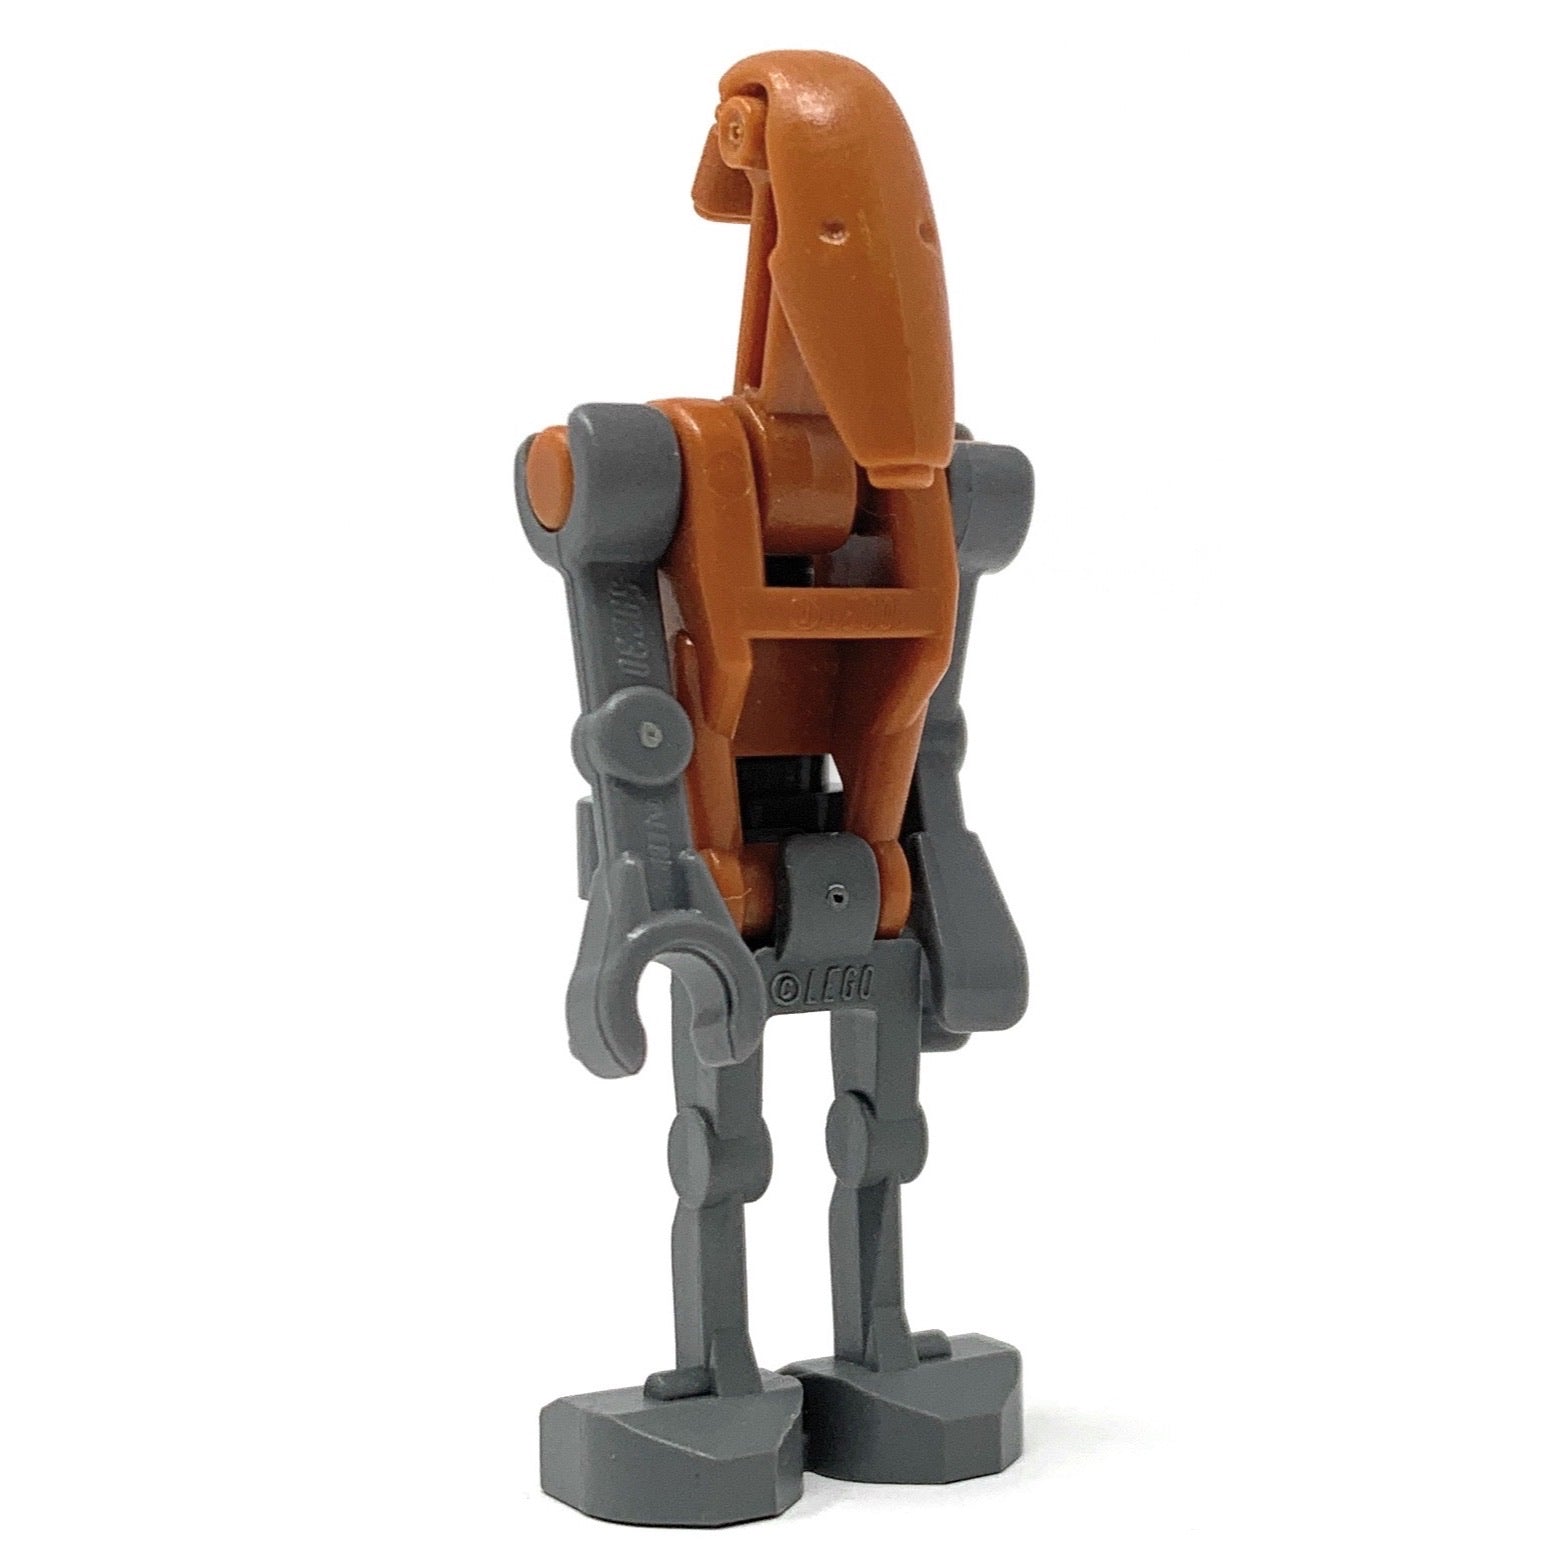 Rocket Battle Droid - LEGO Star Wars Minifigure (2010)